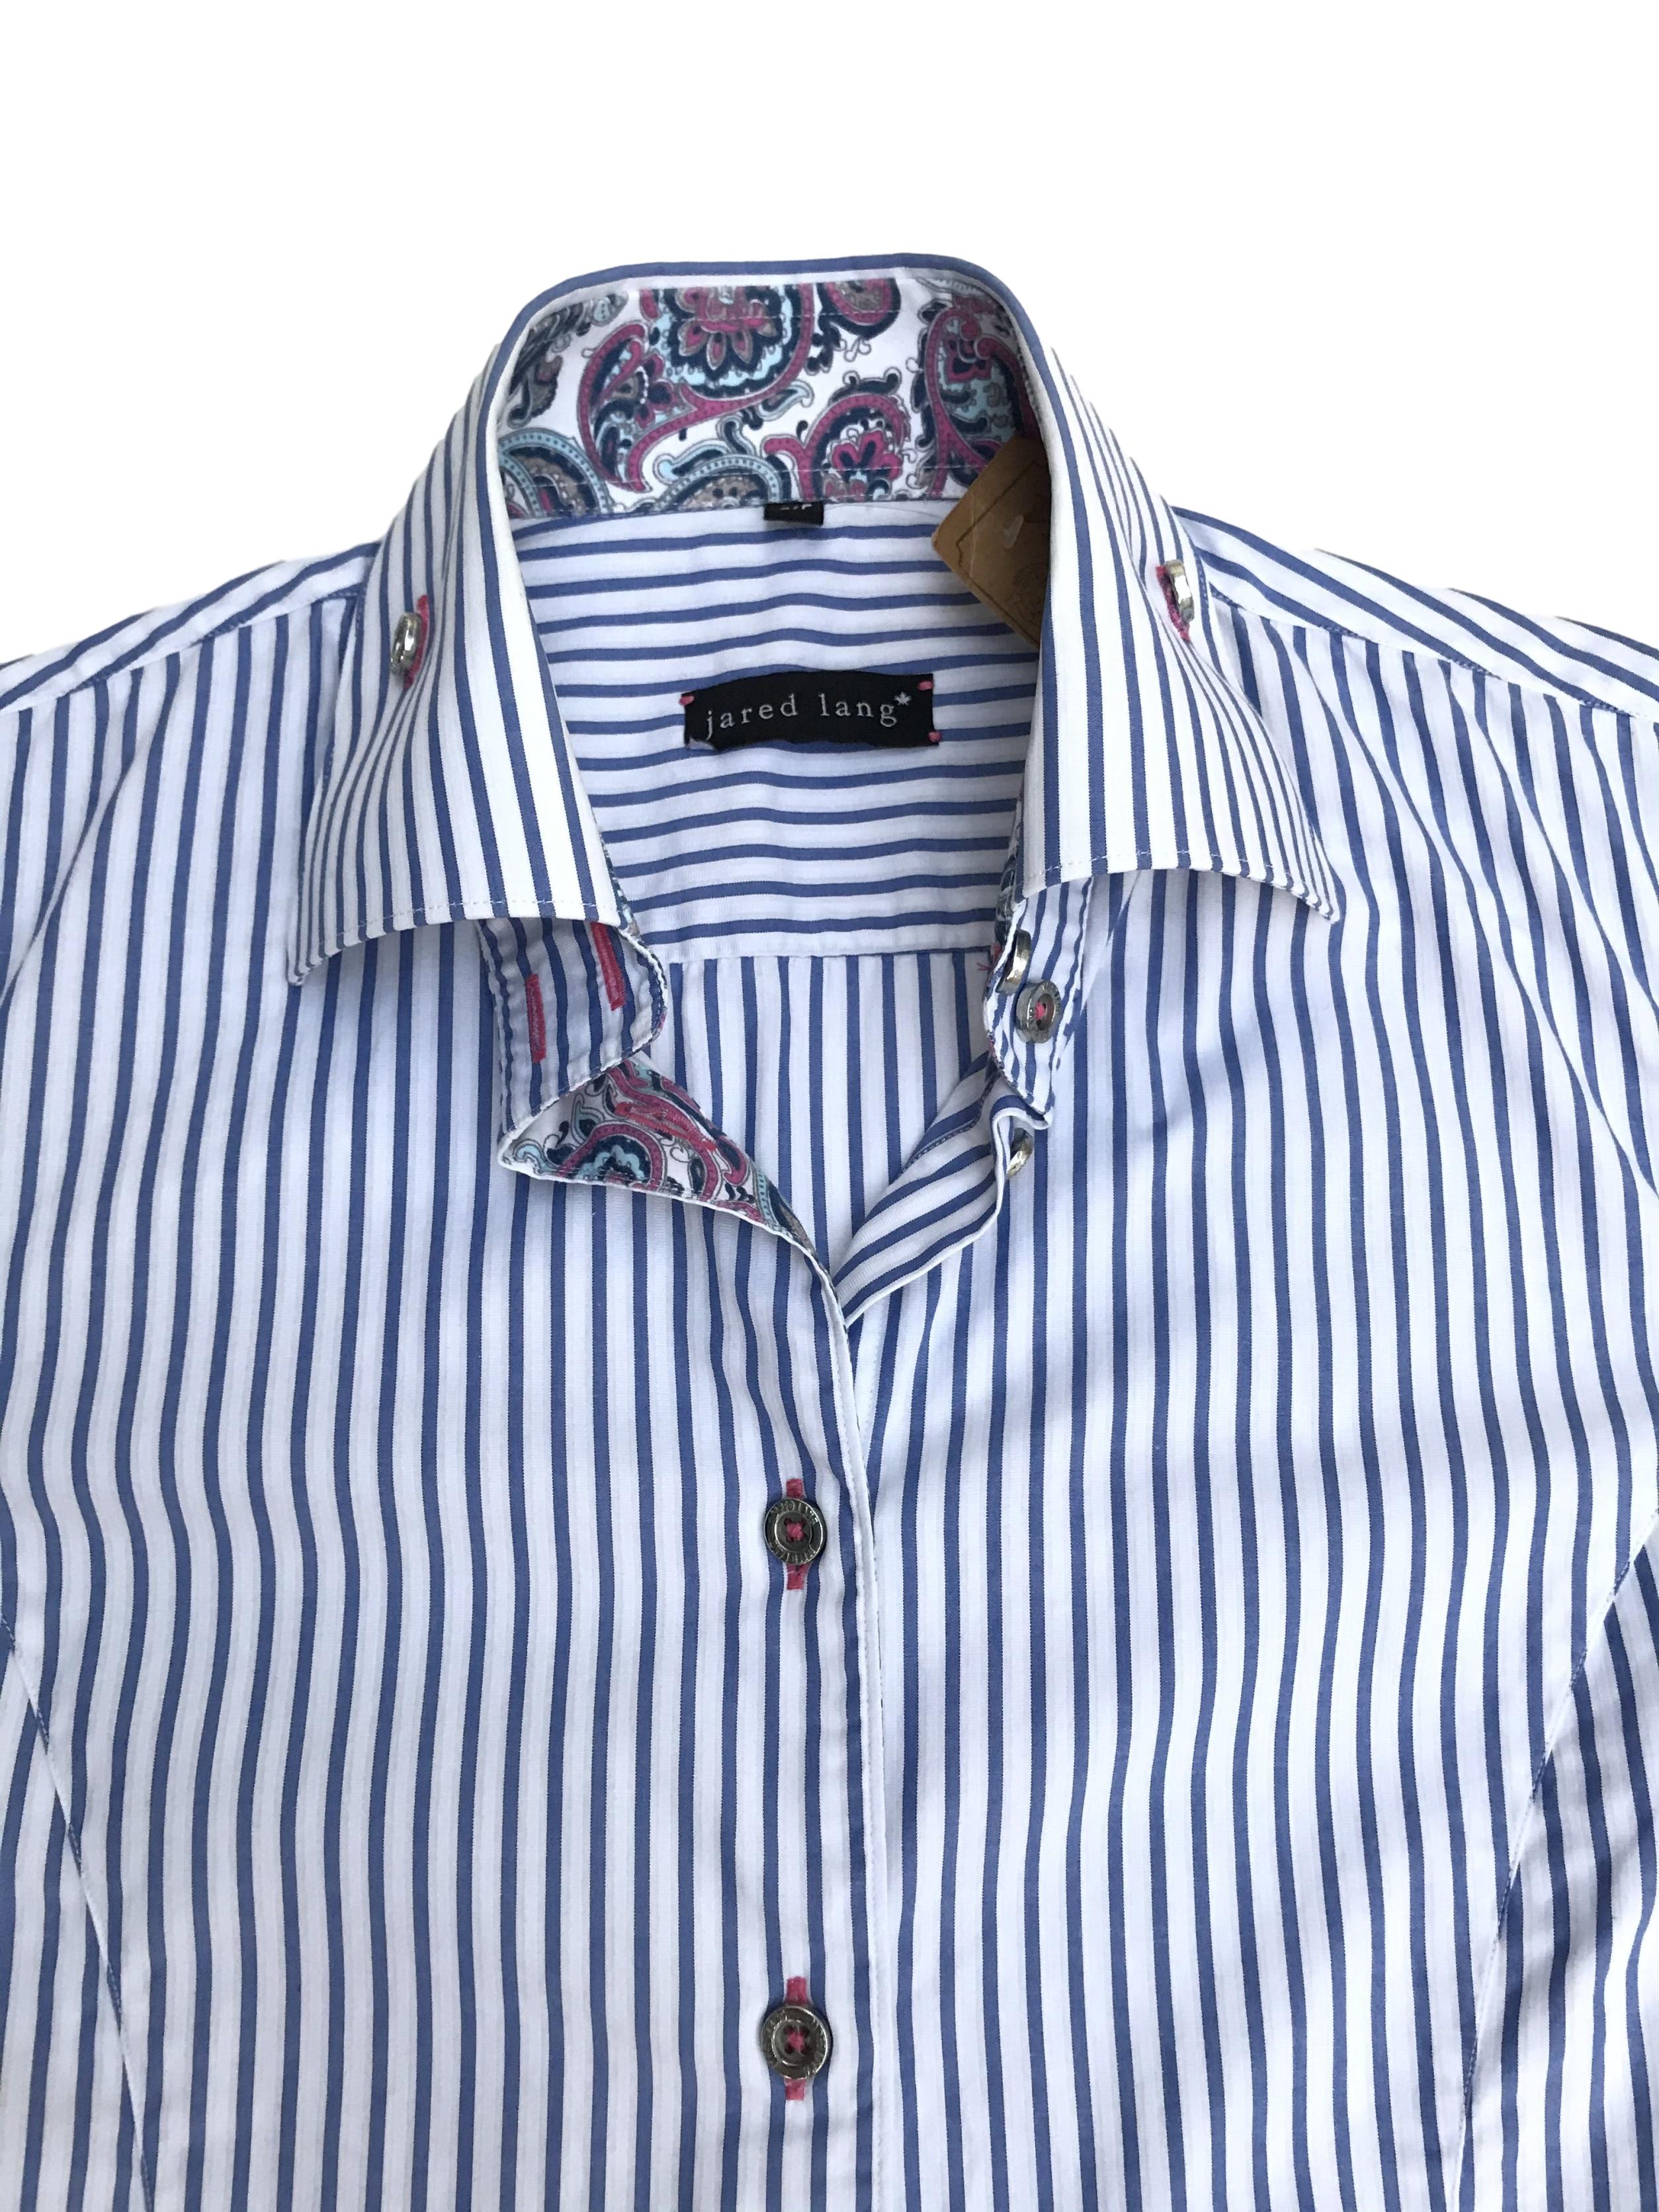 Blusa Jared Lang 100% algodón blanca con rayas celestes, botones plateados y detalle de tela paisley en puños y cuello. La que todas necesitamos en el closet con detalles especiales. Precio original S/ 200